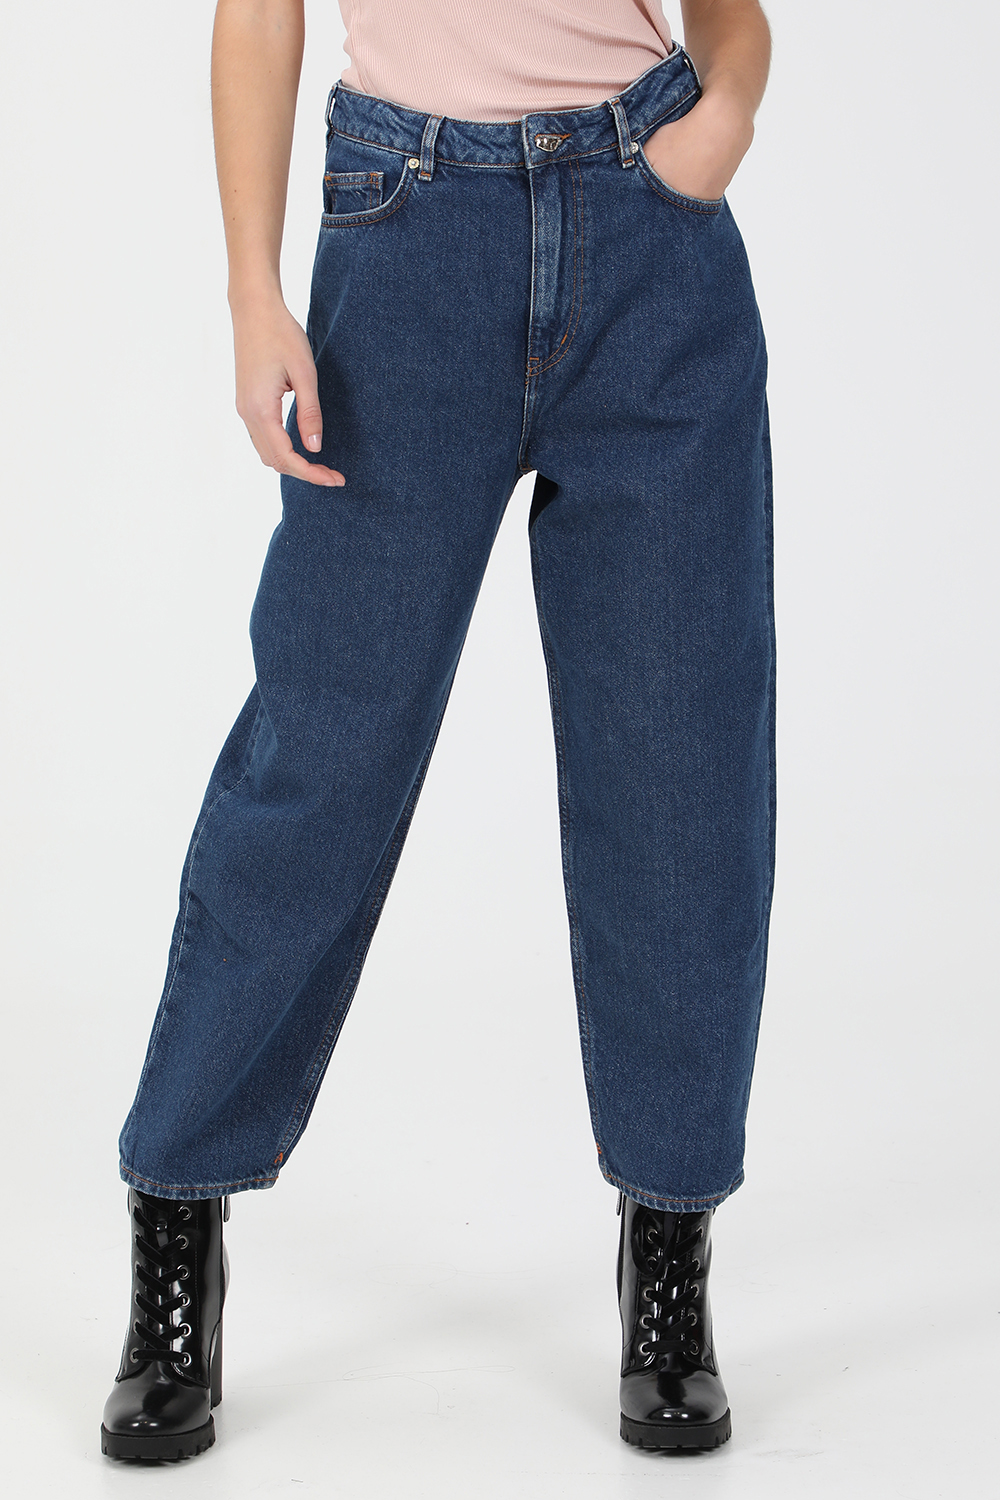 SCOTCH & SODA – Γυναικείο jean παντελόνι SCOTCH & SODA μπλε 1821024.0-0012